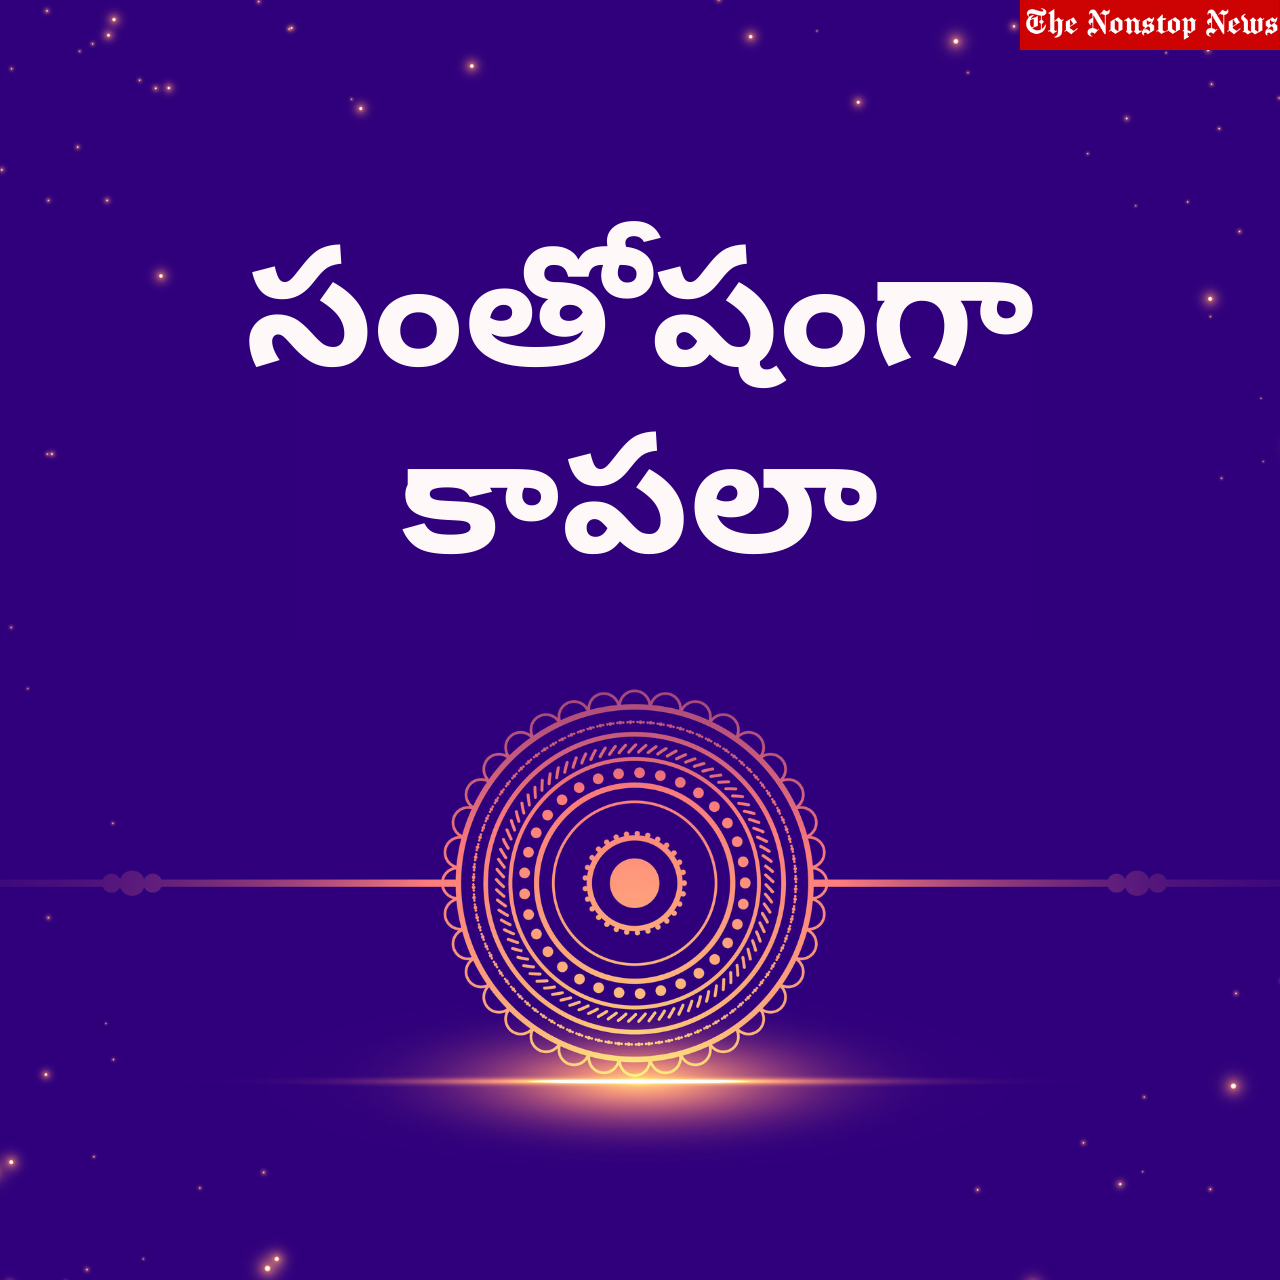 Happy Raksha Bandhan 2021: Telugu Wishes, Quotes, HD Images, Greetings, Shayari, and Messages